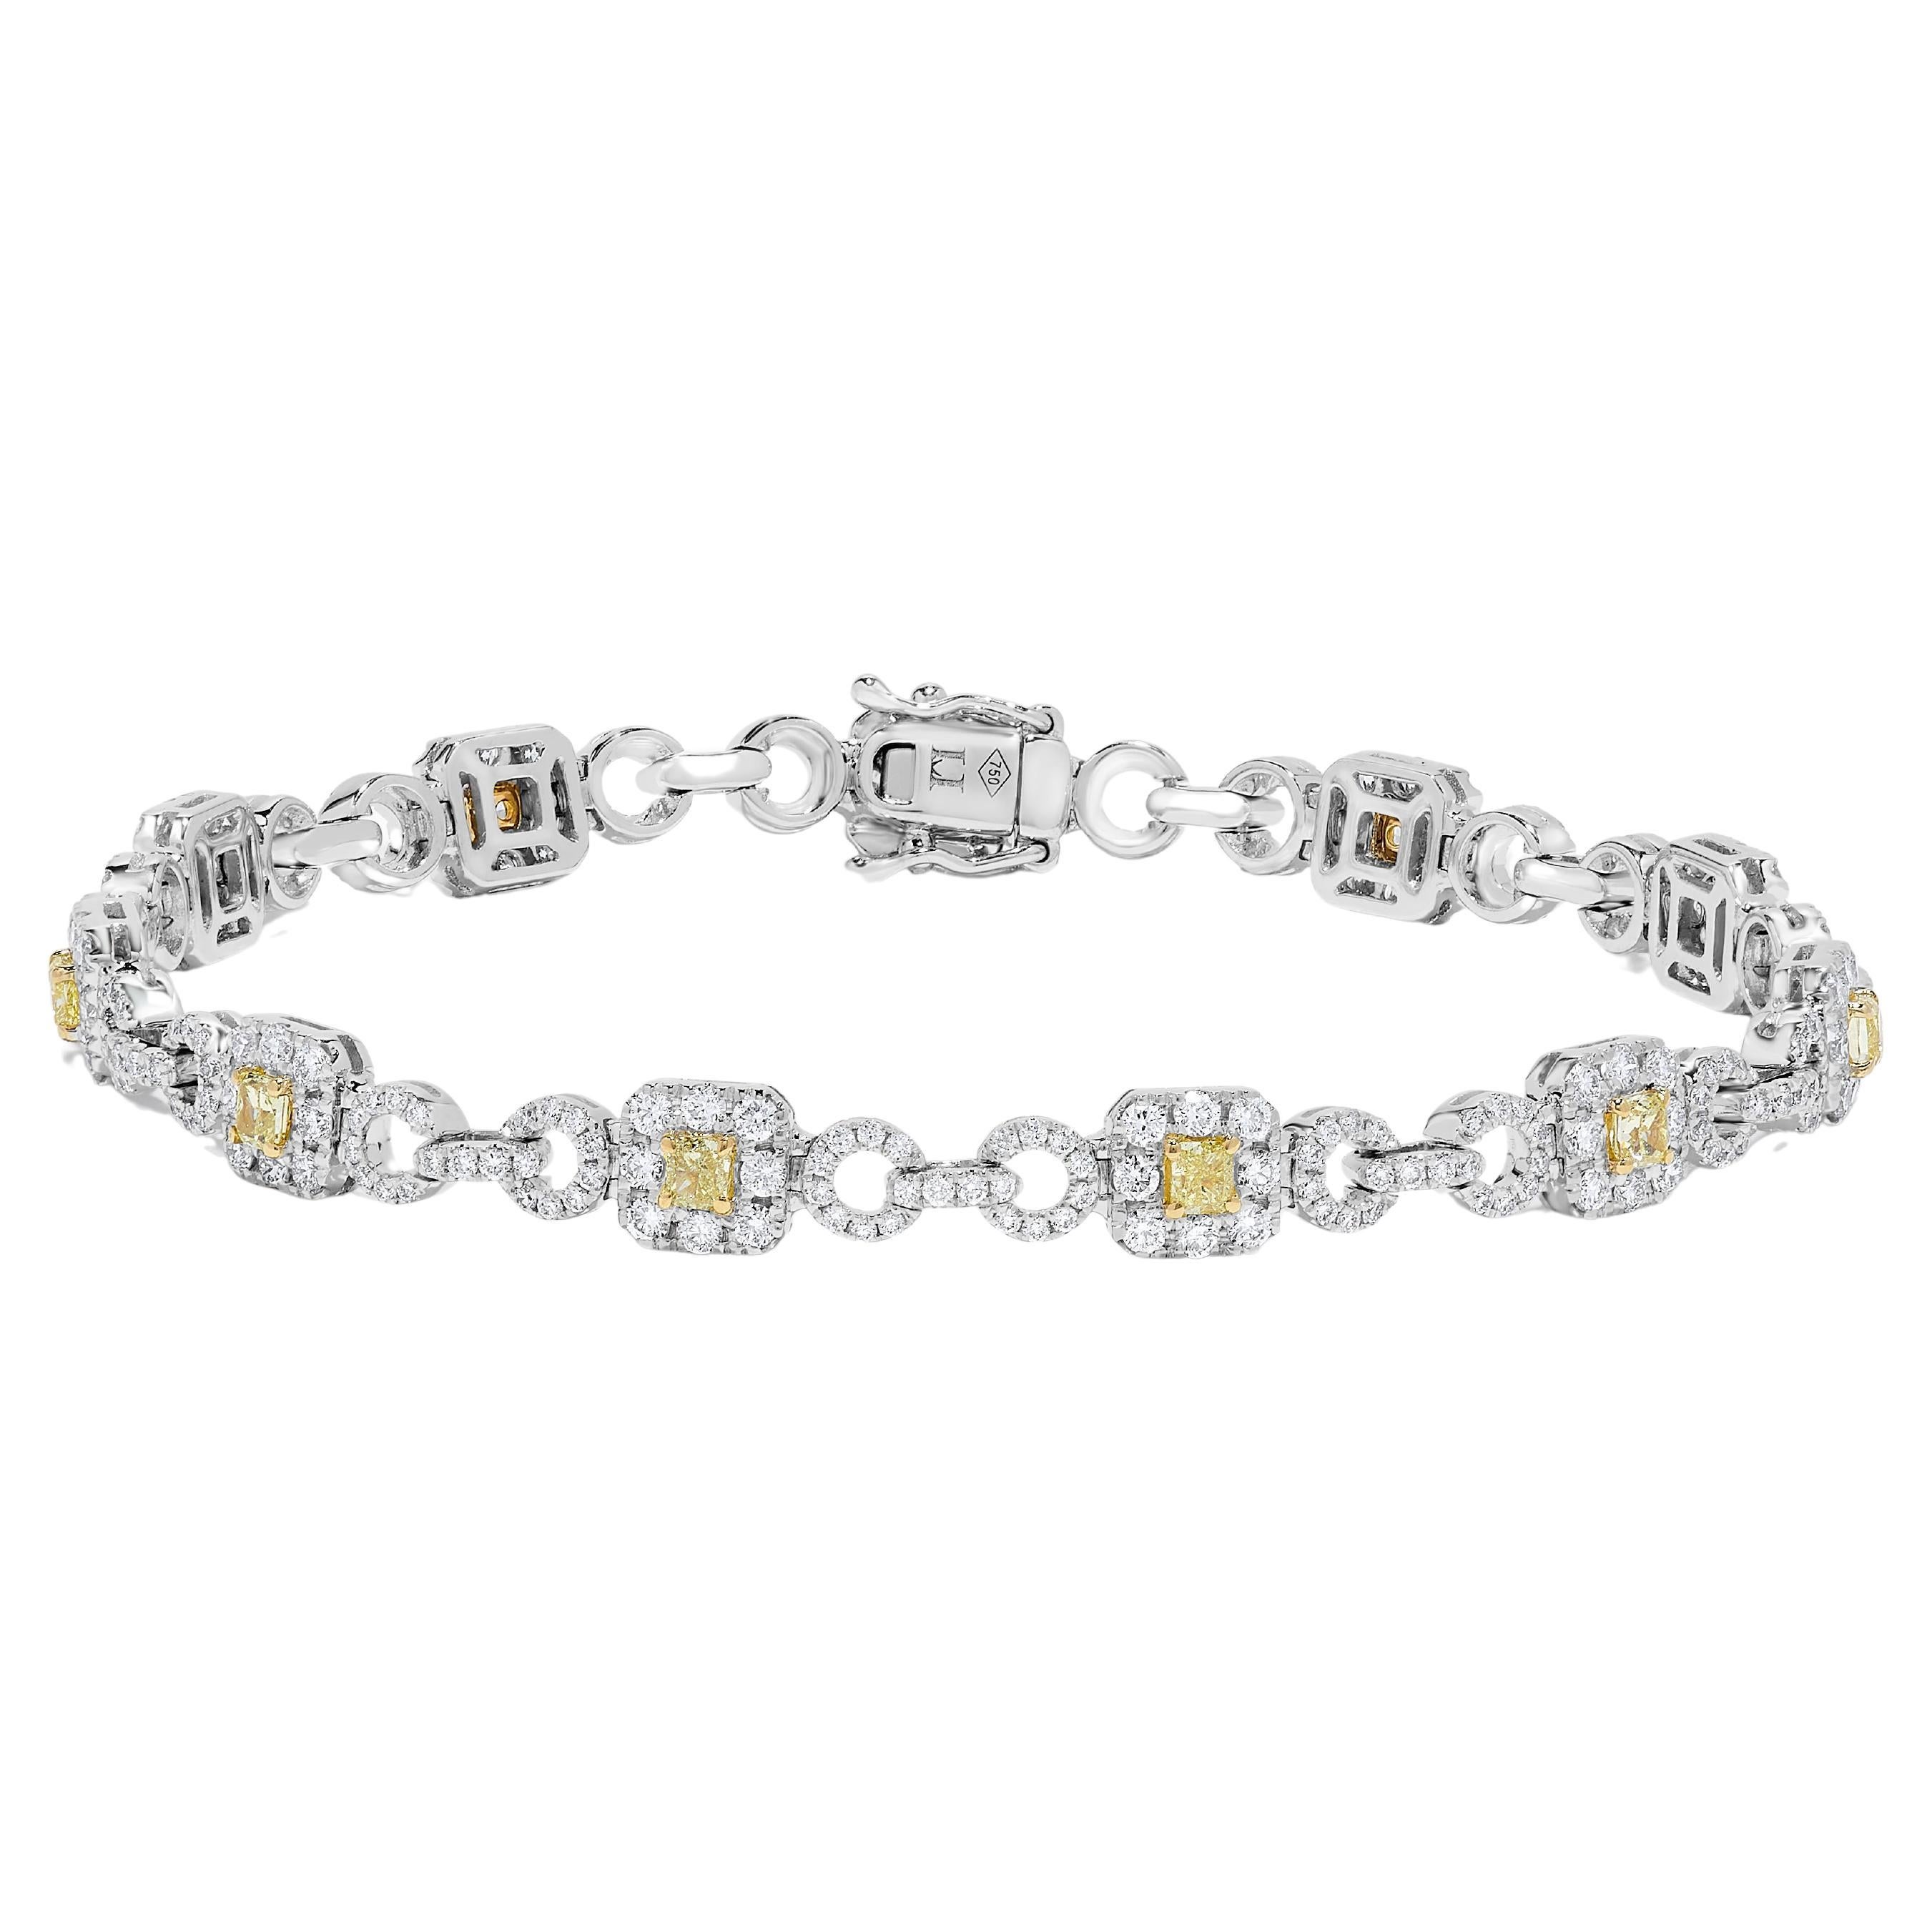 Bracelet tennis en or jaune naturel avec diamants taille coussin de 2.94 carats poids total